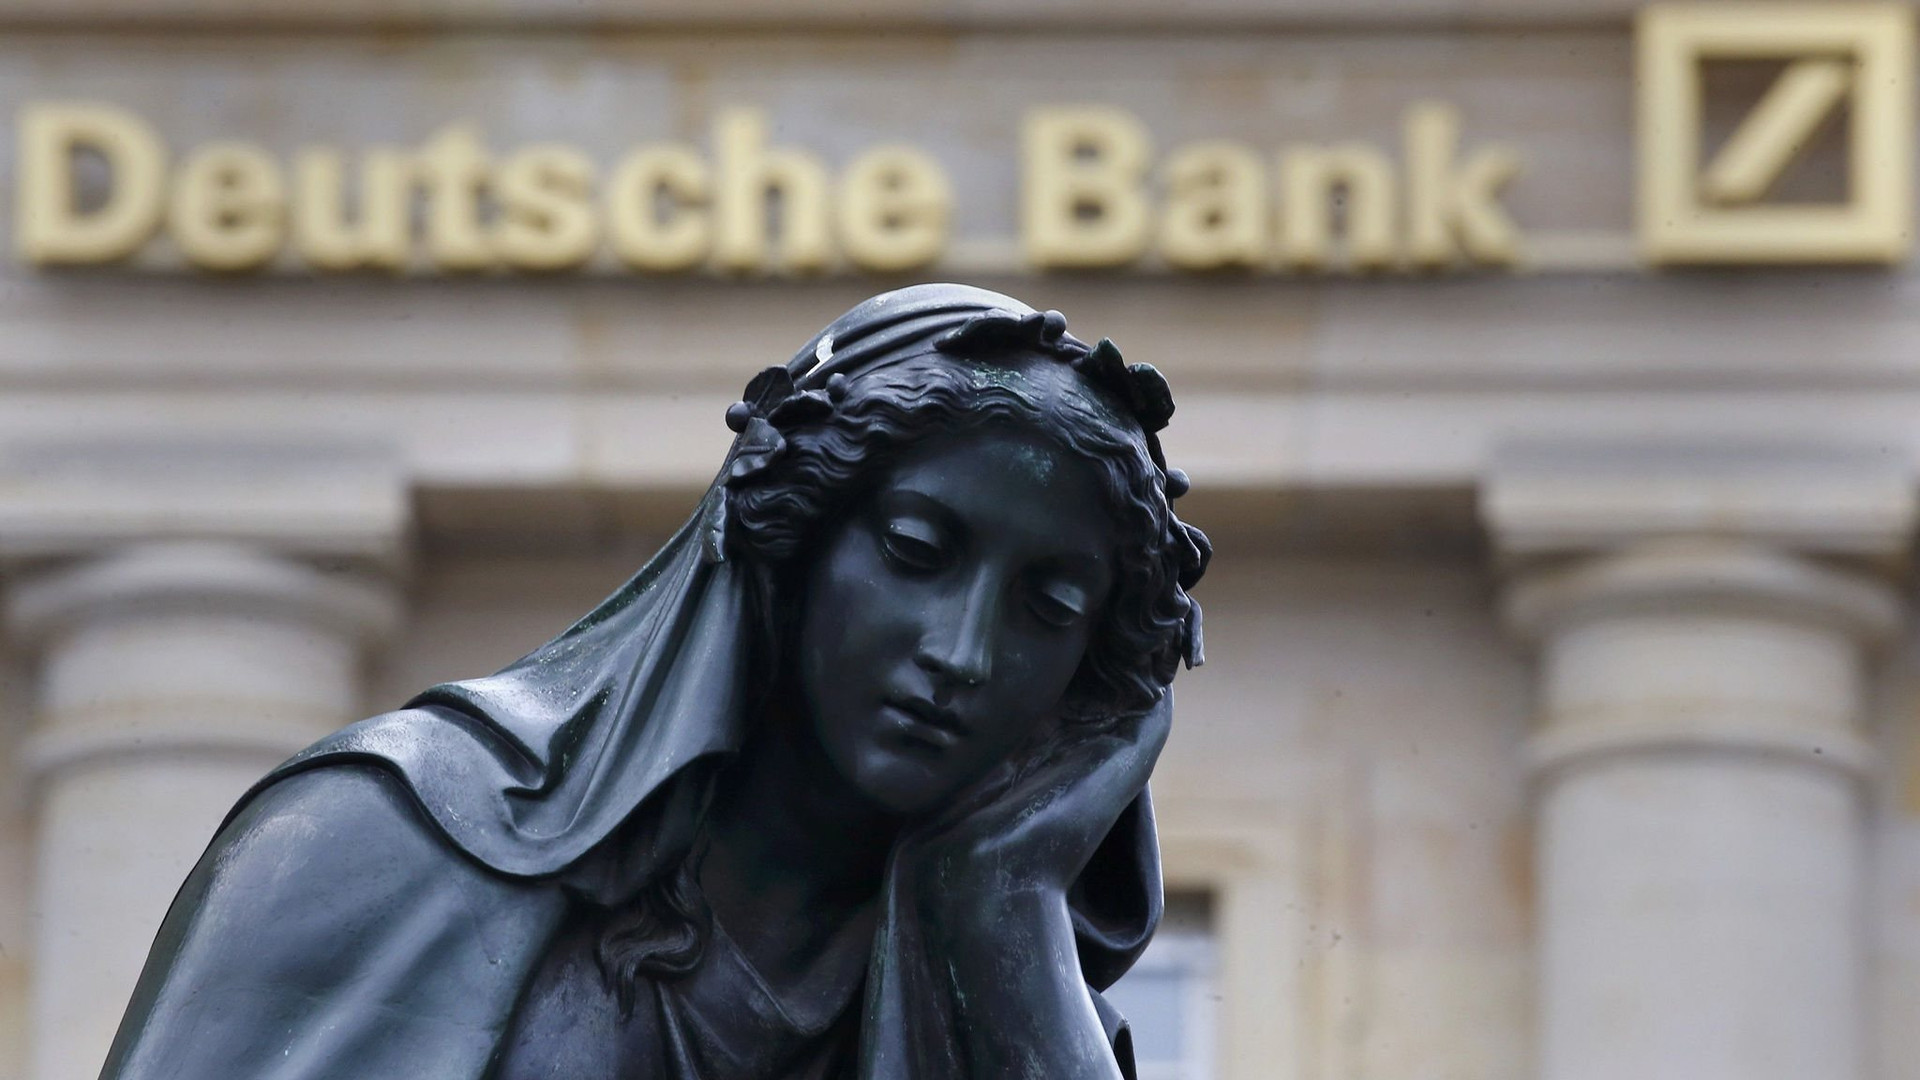 Được đánh giá là ngân hàng có 'sức khoẻ tốt' nhưng cổ phiếu vẫn bị bán mạnh, chuyện gì đang xảy ra ở Deutsche Bank? - Ảnh 1.